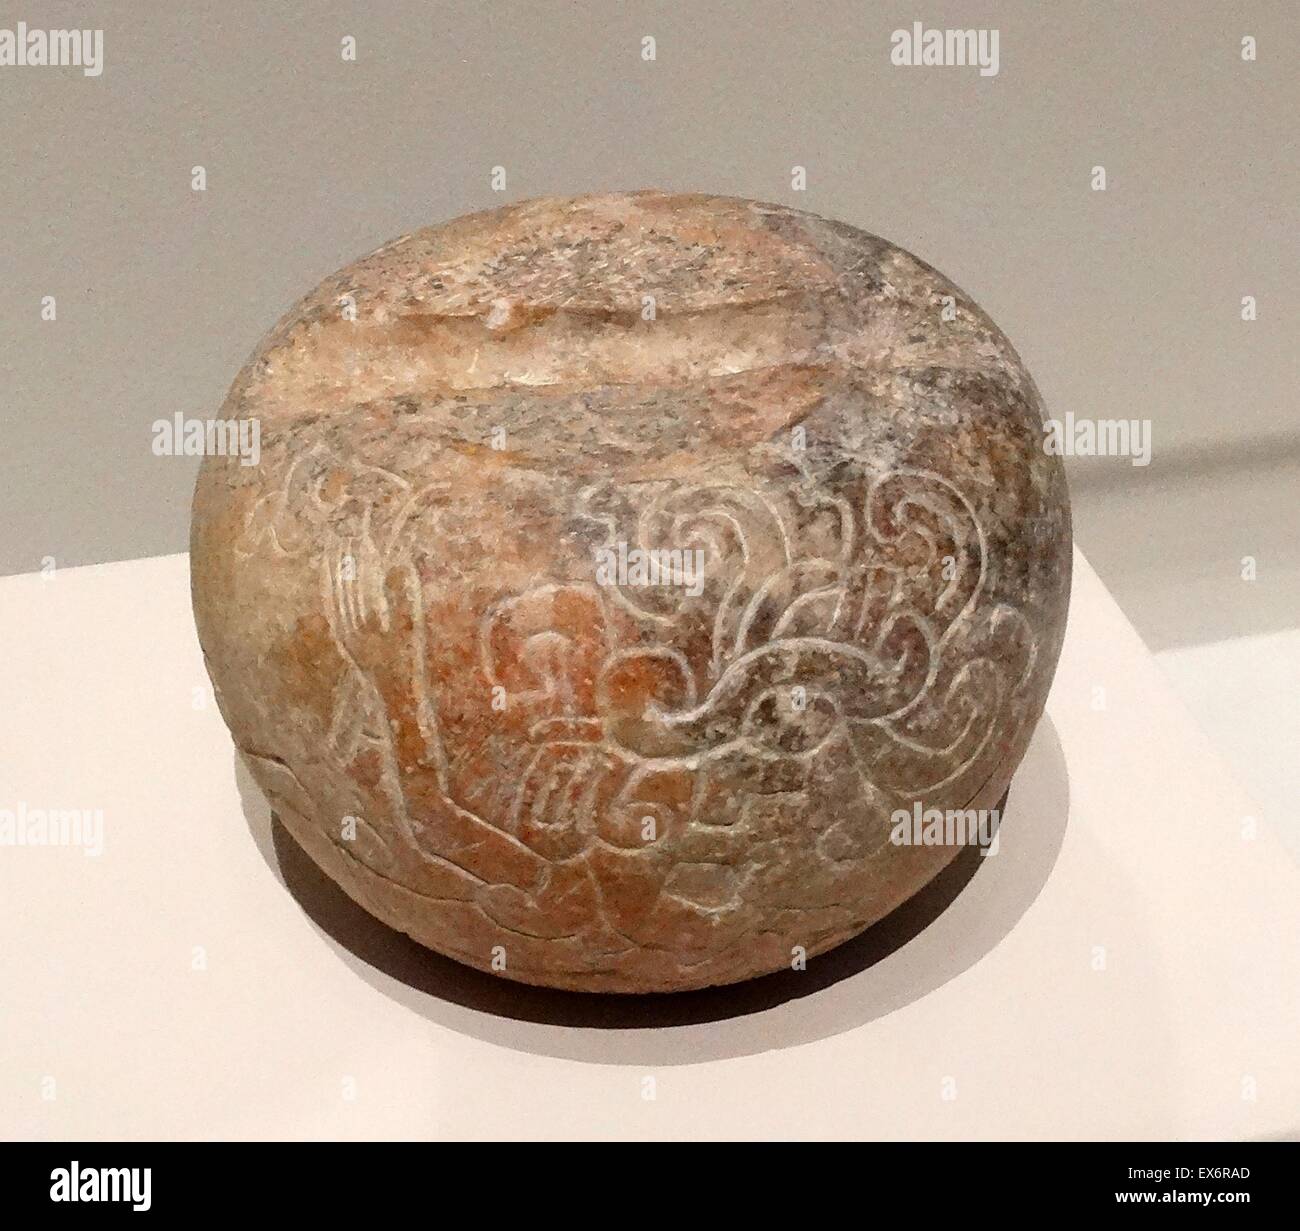 Kalkstein Ballspiel Marker Kugel aus Tabasco, Mexiko. Vom 250-900 n. Chr.. Stockfoto